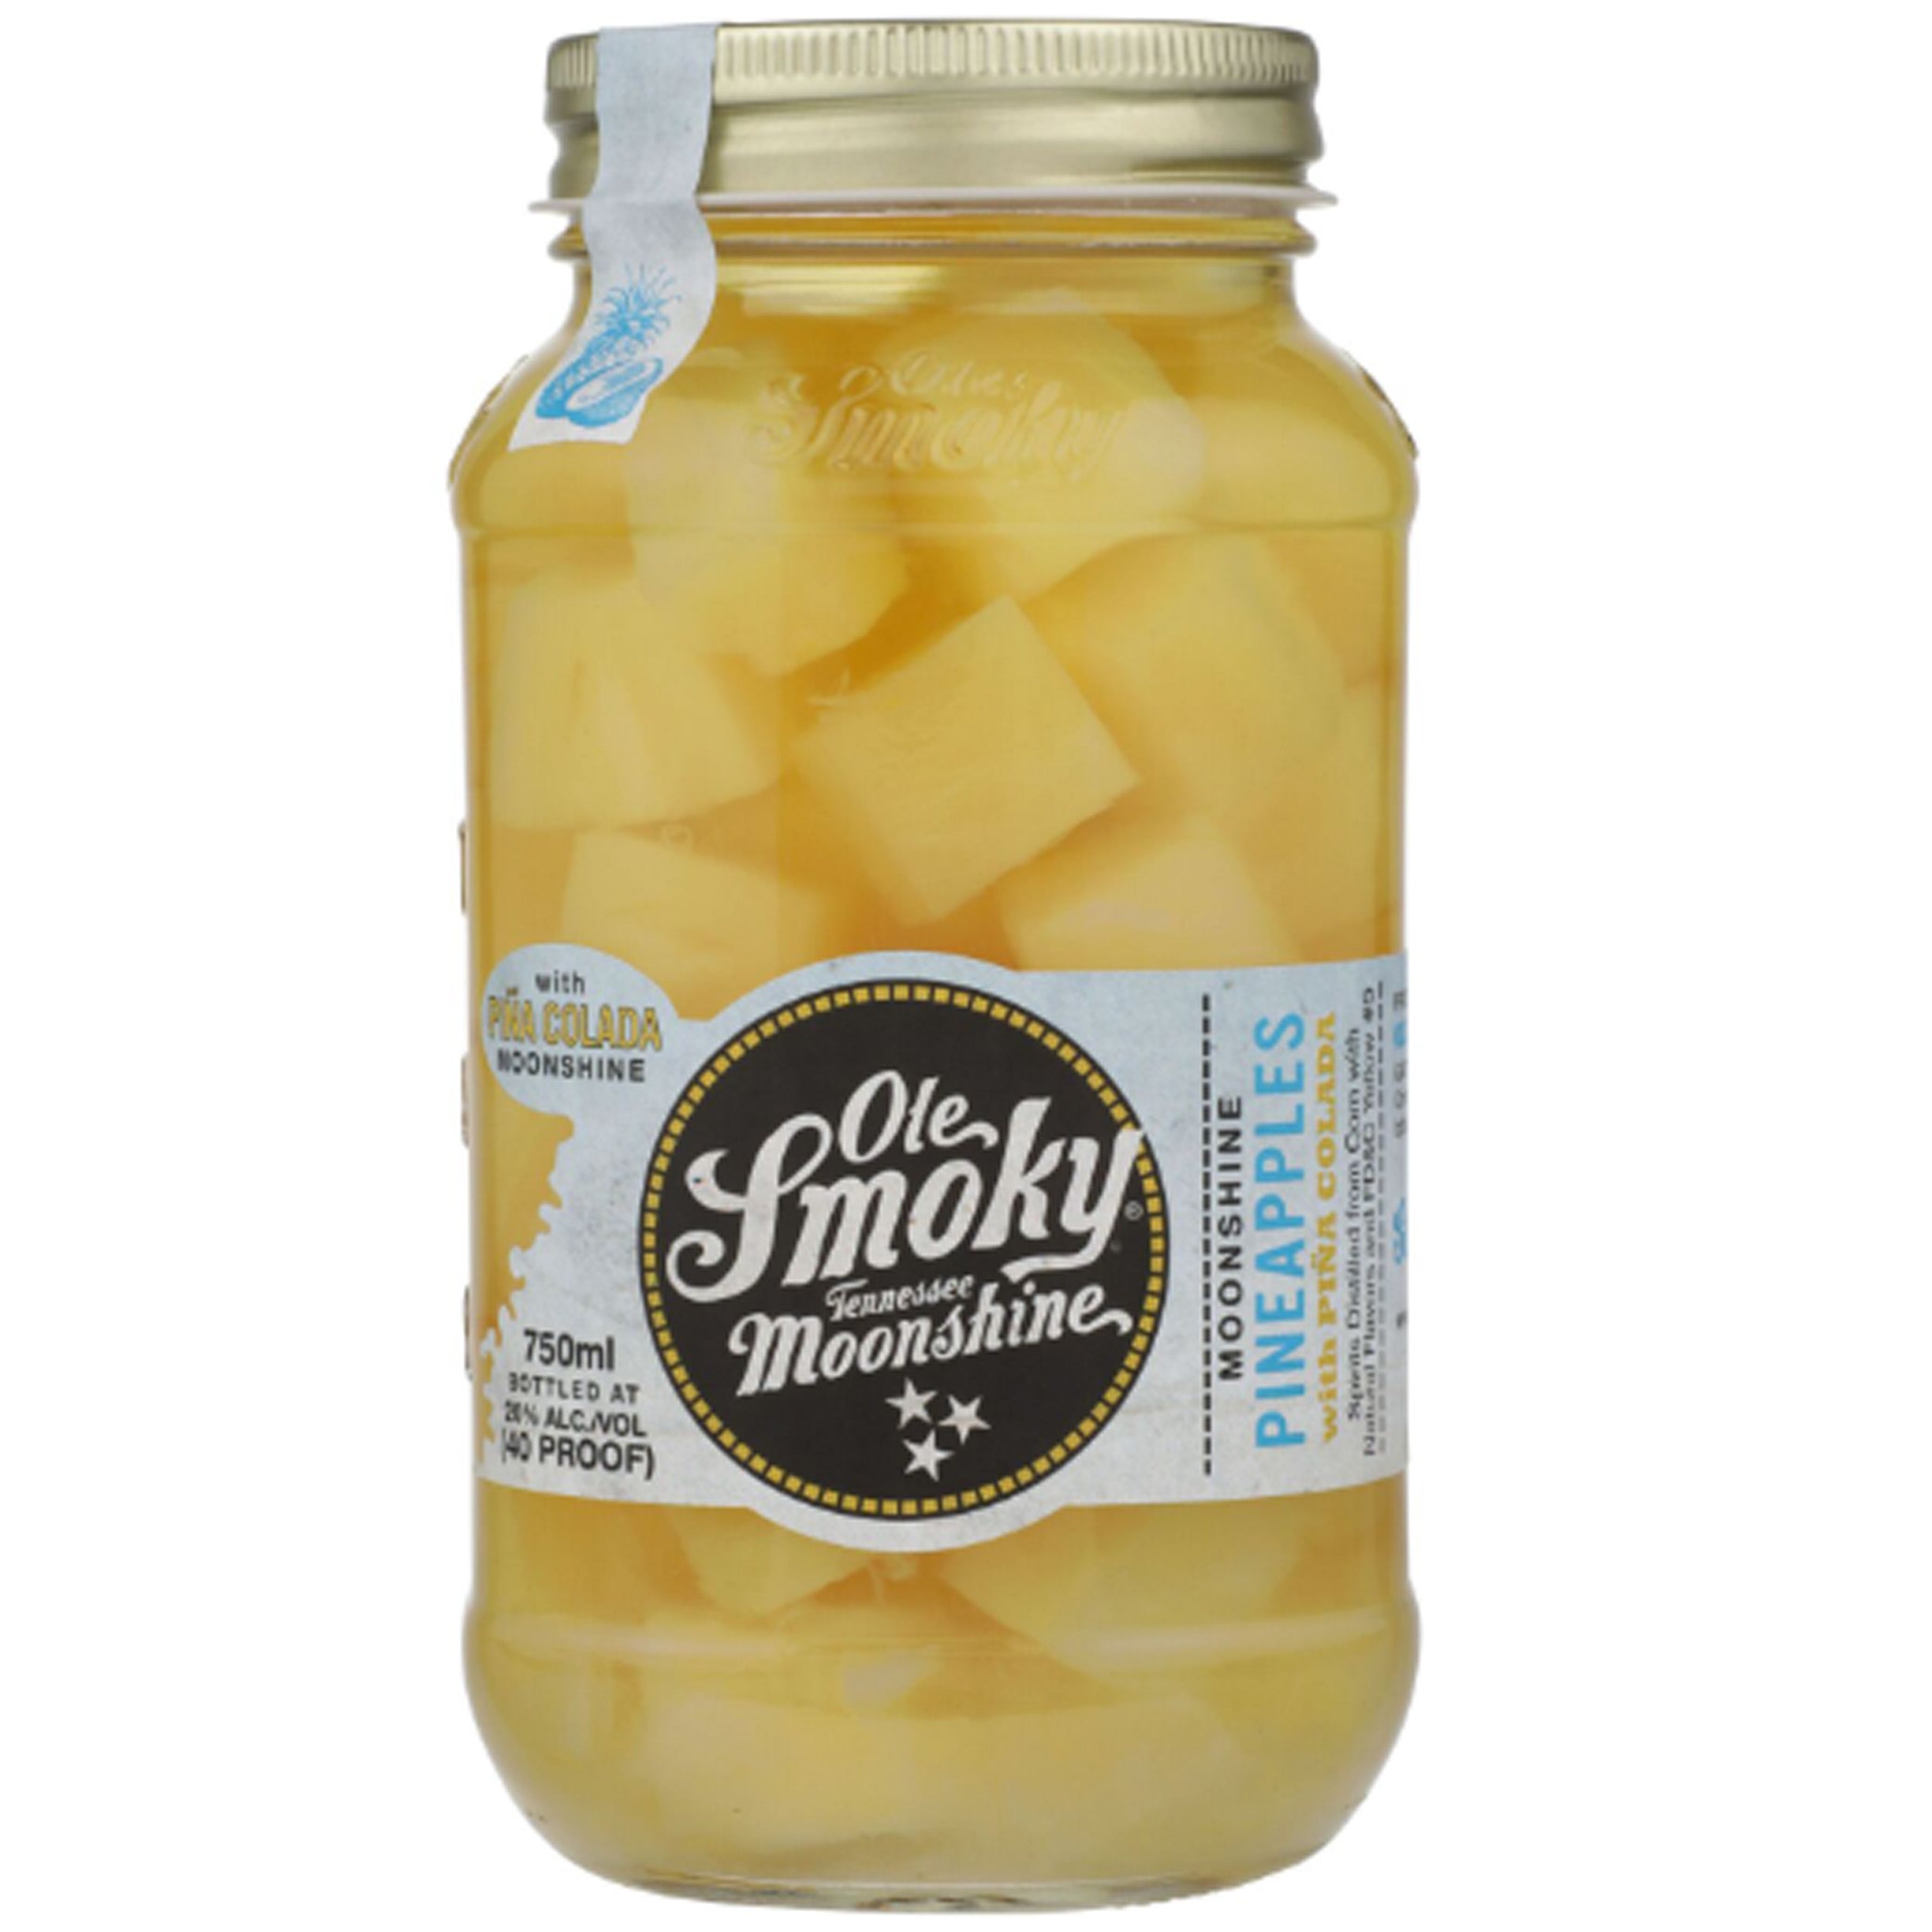 Ole Smoky Pineapples With Pina Colada Moonshine